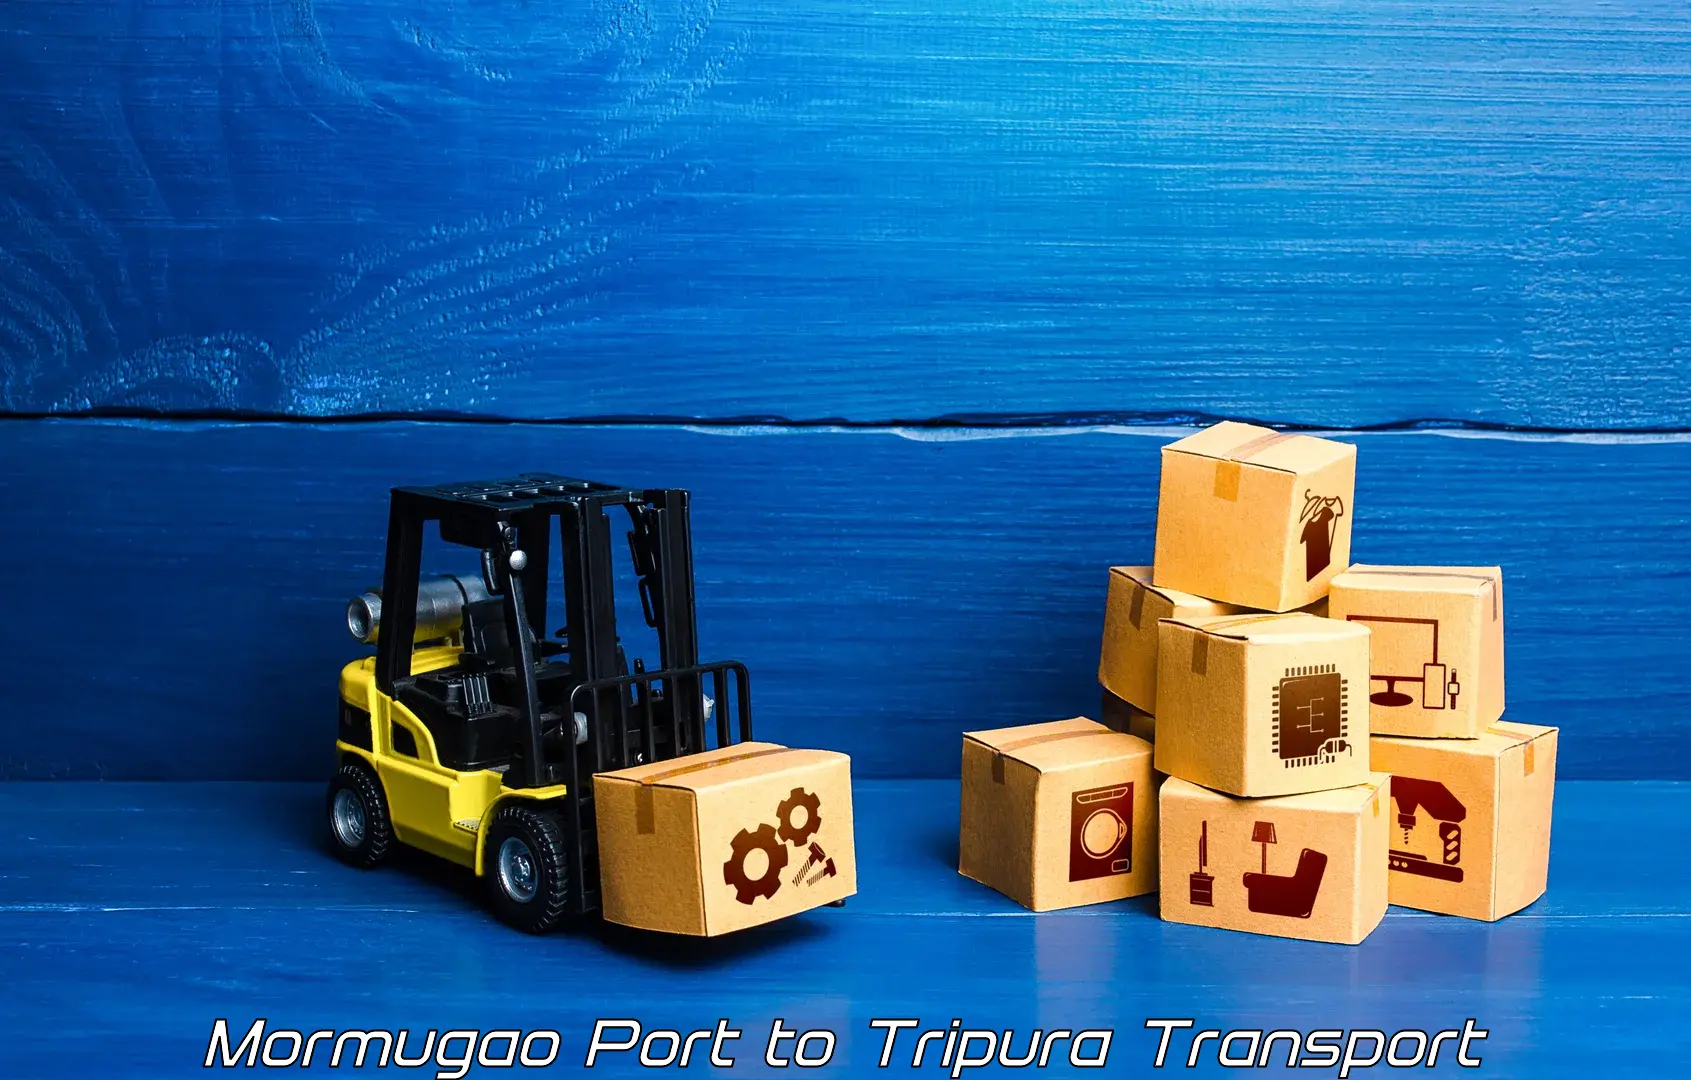 Nationwide transport services Mormugao Port to Tripura